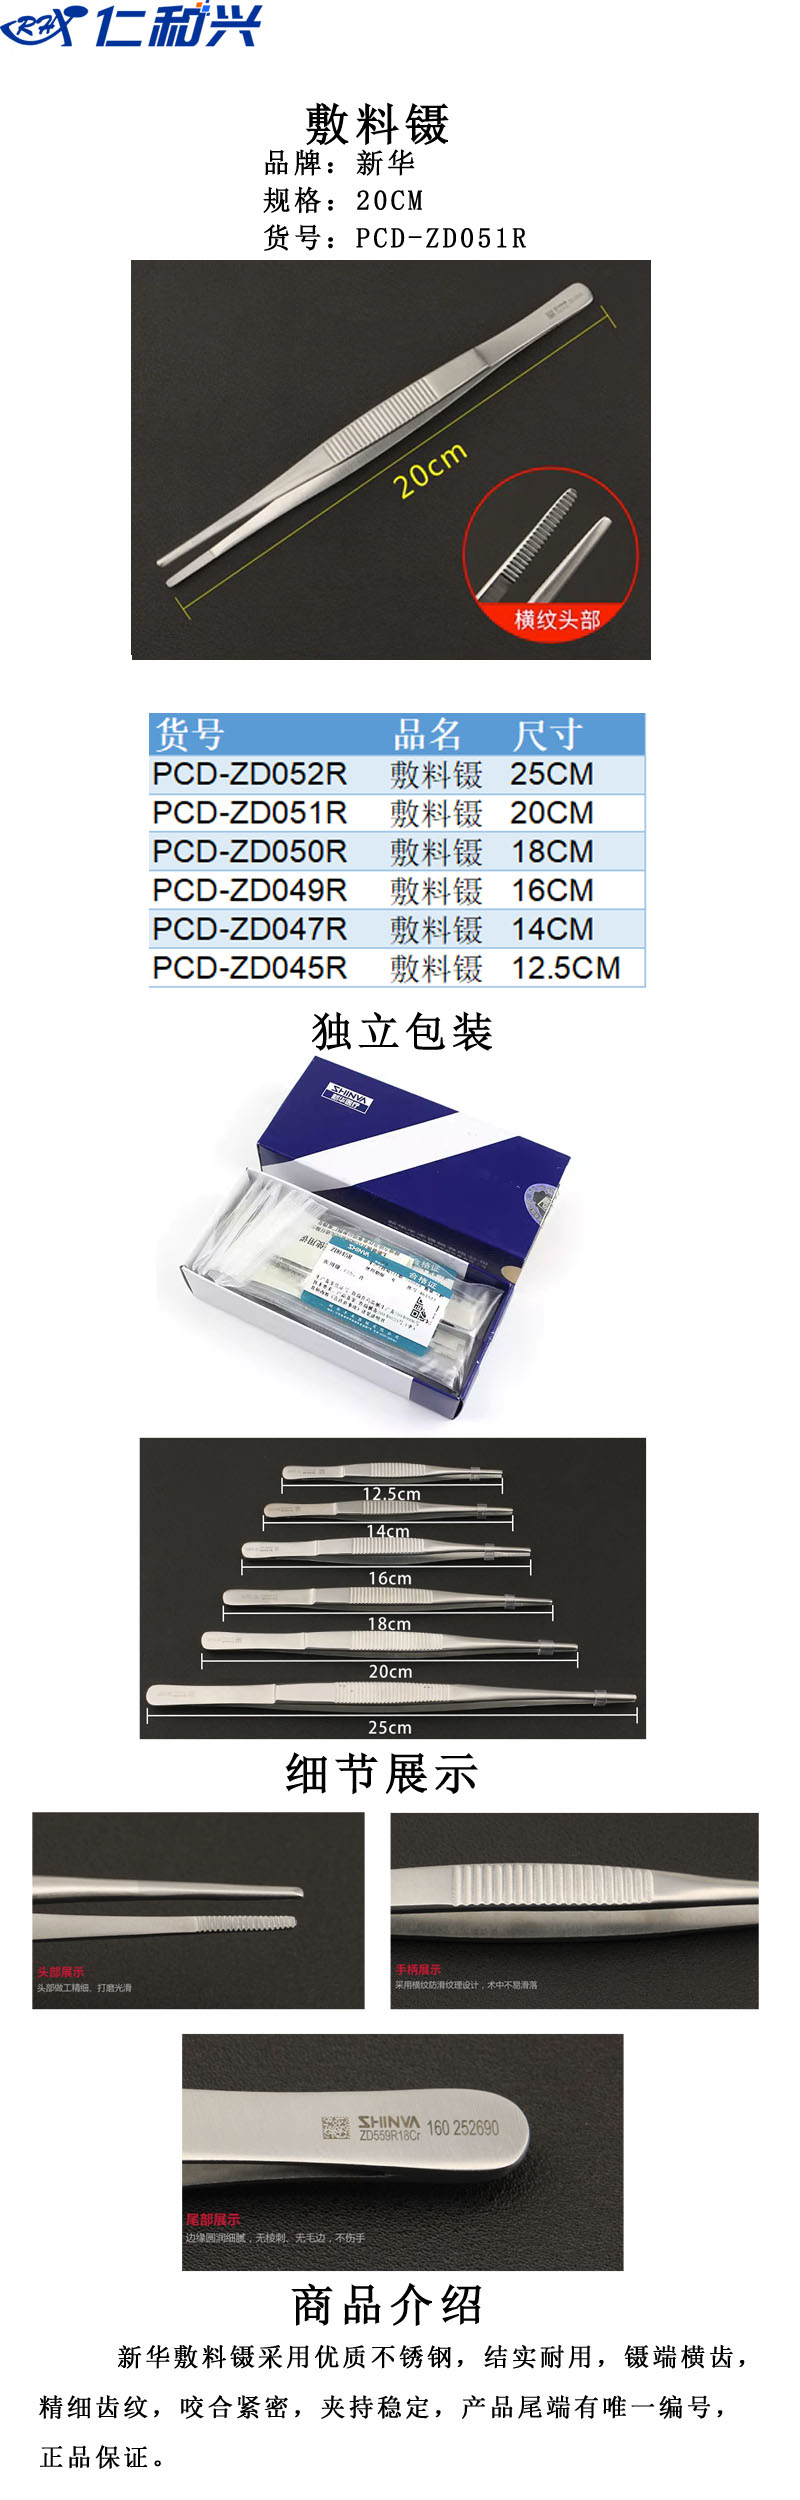 PCD-ZD051R.jpg